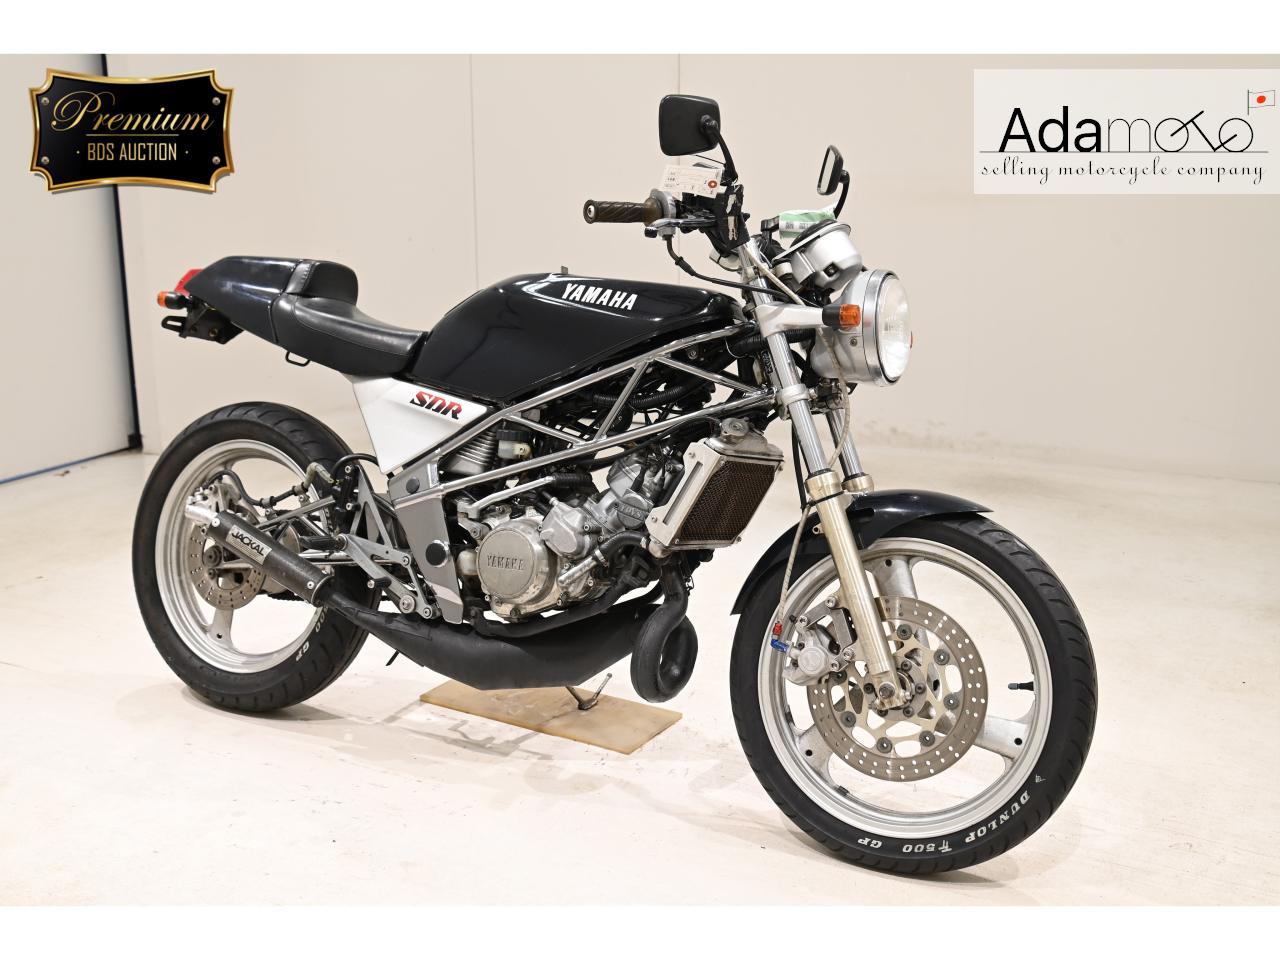 Yamaha SDR200 - Adamoto - Motorcycles from Japan